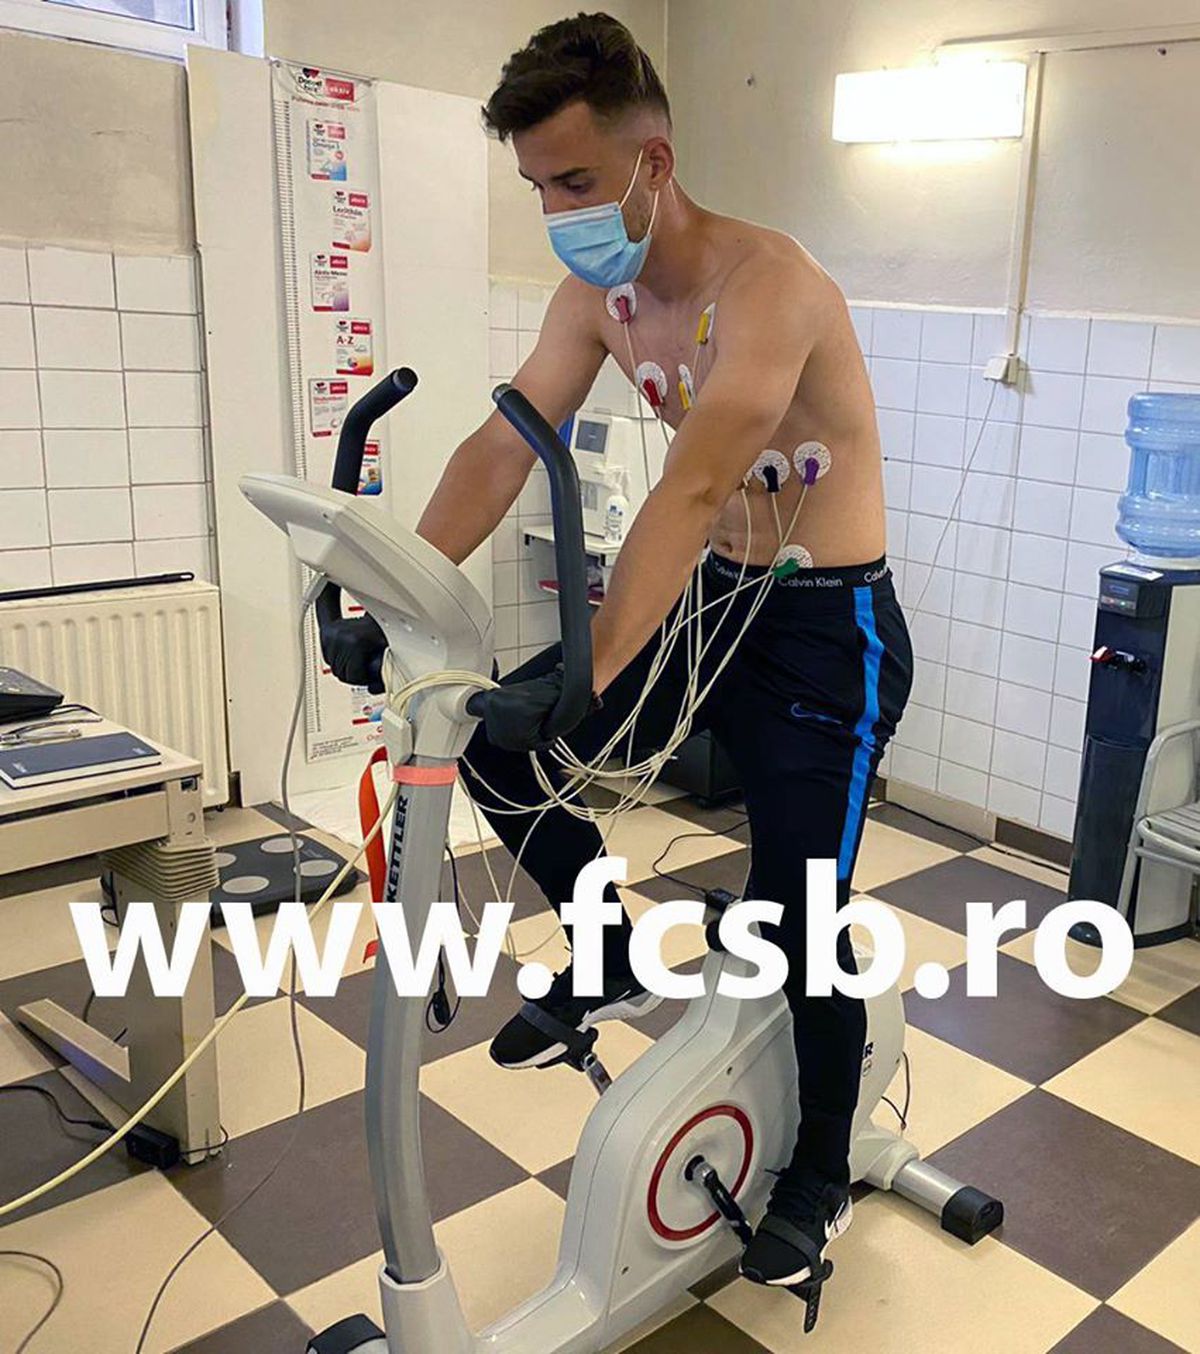 Veste bună pentru FCSB! Bogdan Vintilă s-a trezit cu doi jucători noi la antrenamente